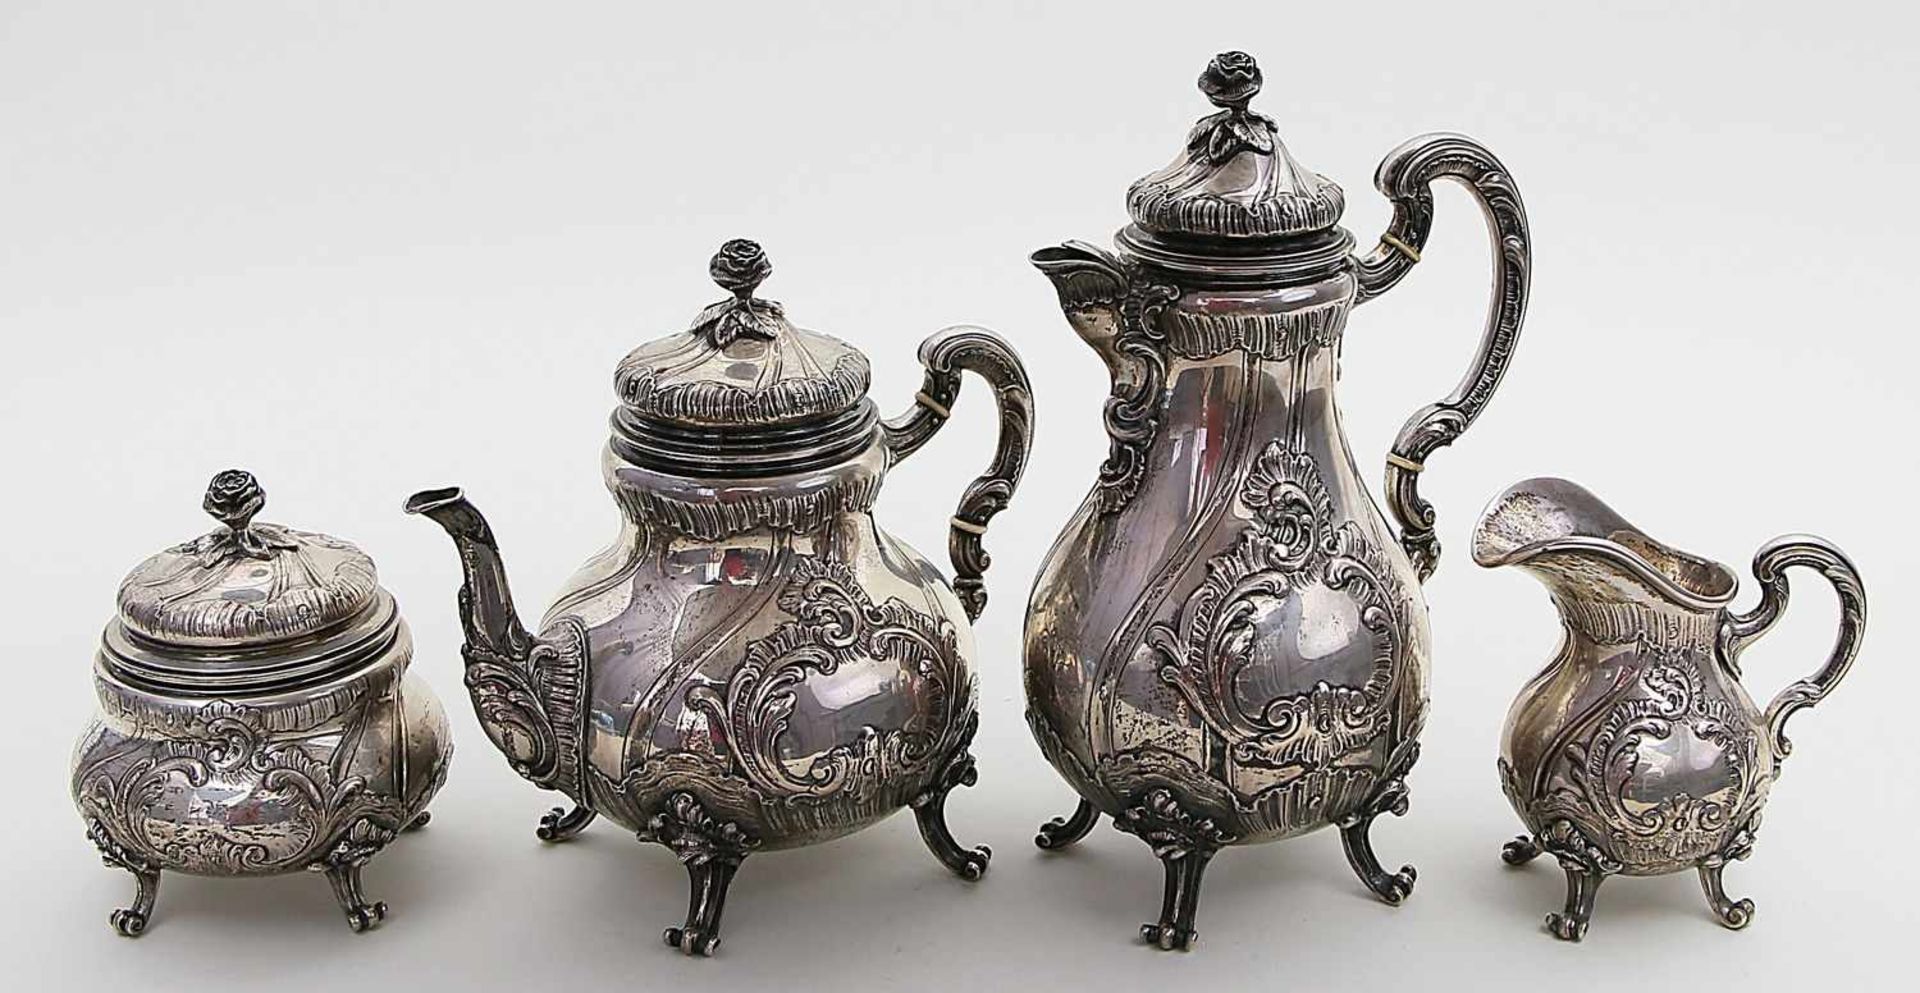 Kaffee- und Teekernstück im Rokokostil.800/000 Silber, 2.445 g. Gedrückt birnförmige Laibung mit